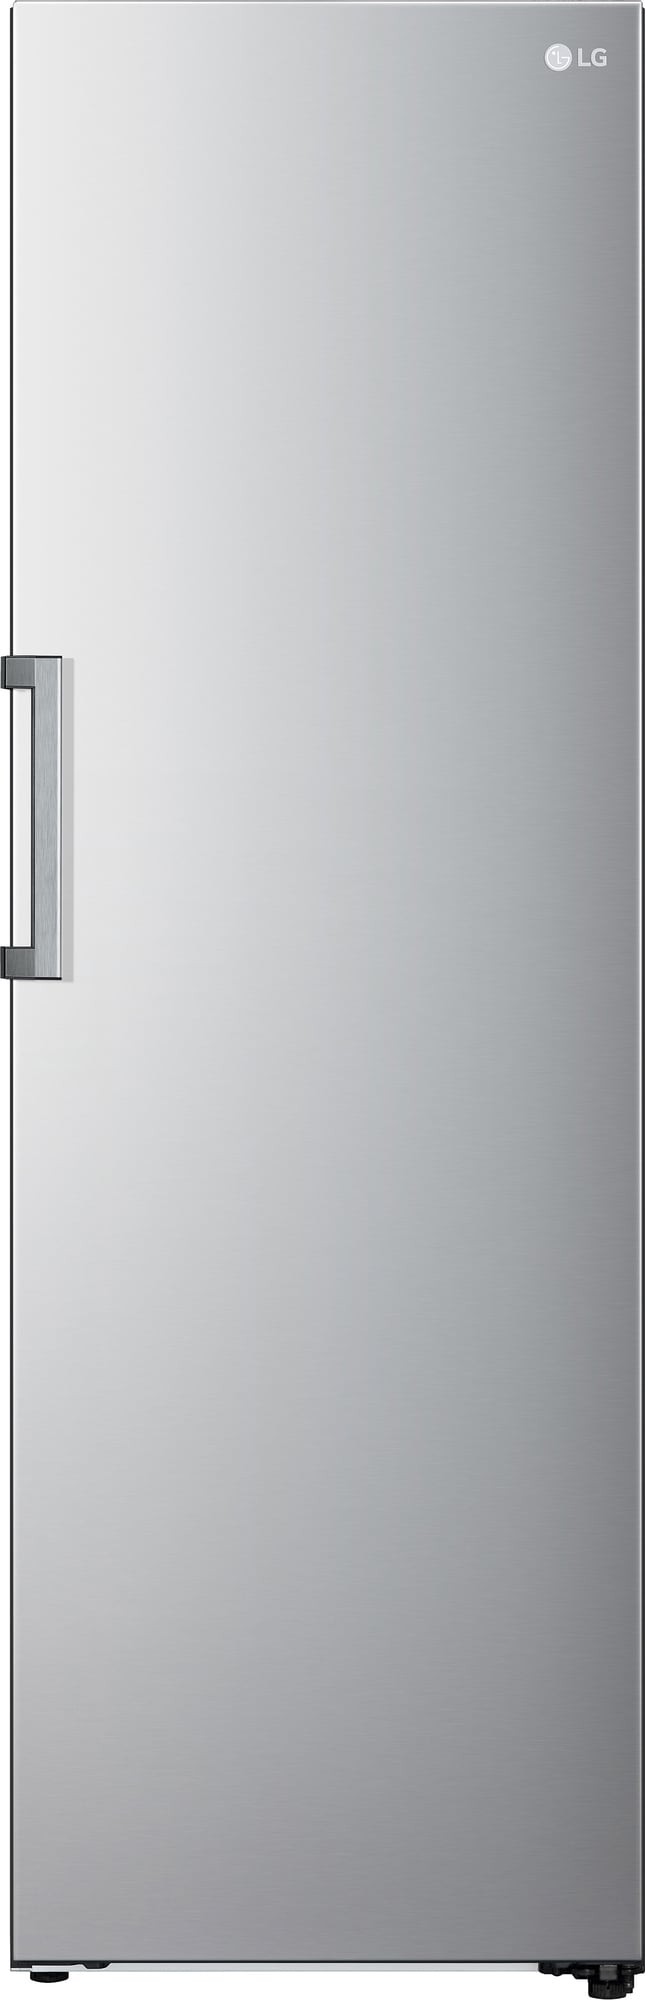 Billede af LG køleskab GLT51PZGSZ (stål)